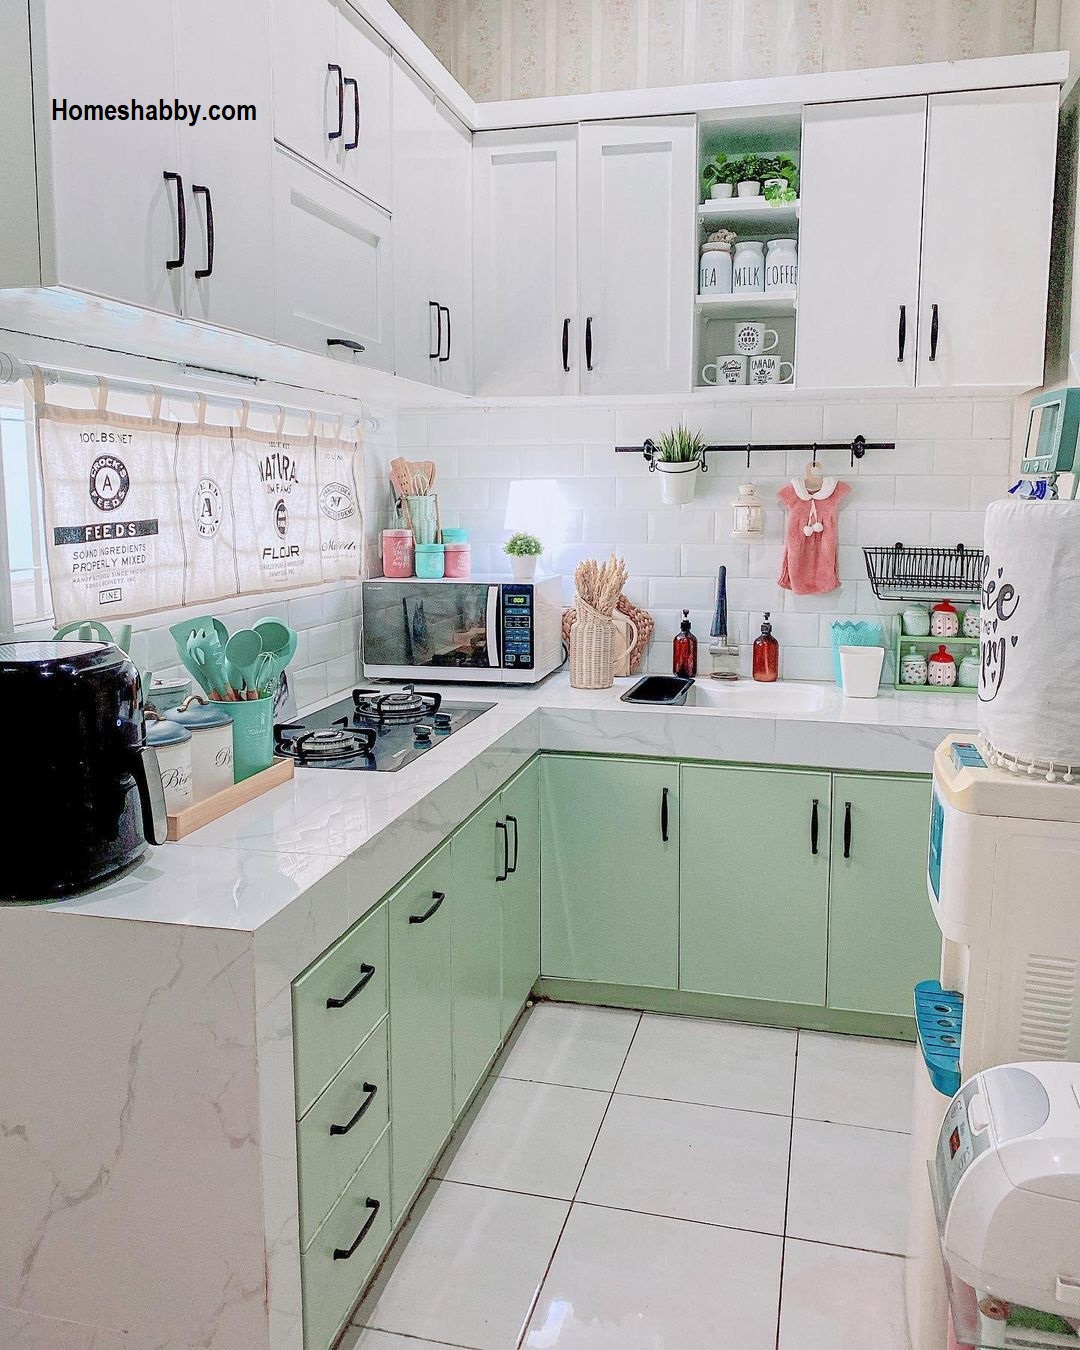 Contoh Dapur Minimalis Sederhana Yang Mudah Ditiru Di Rumah Kecil Homeshabbycom Design Home Plans